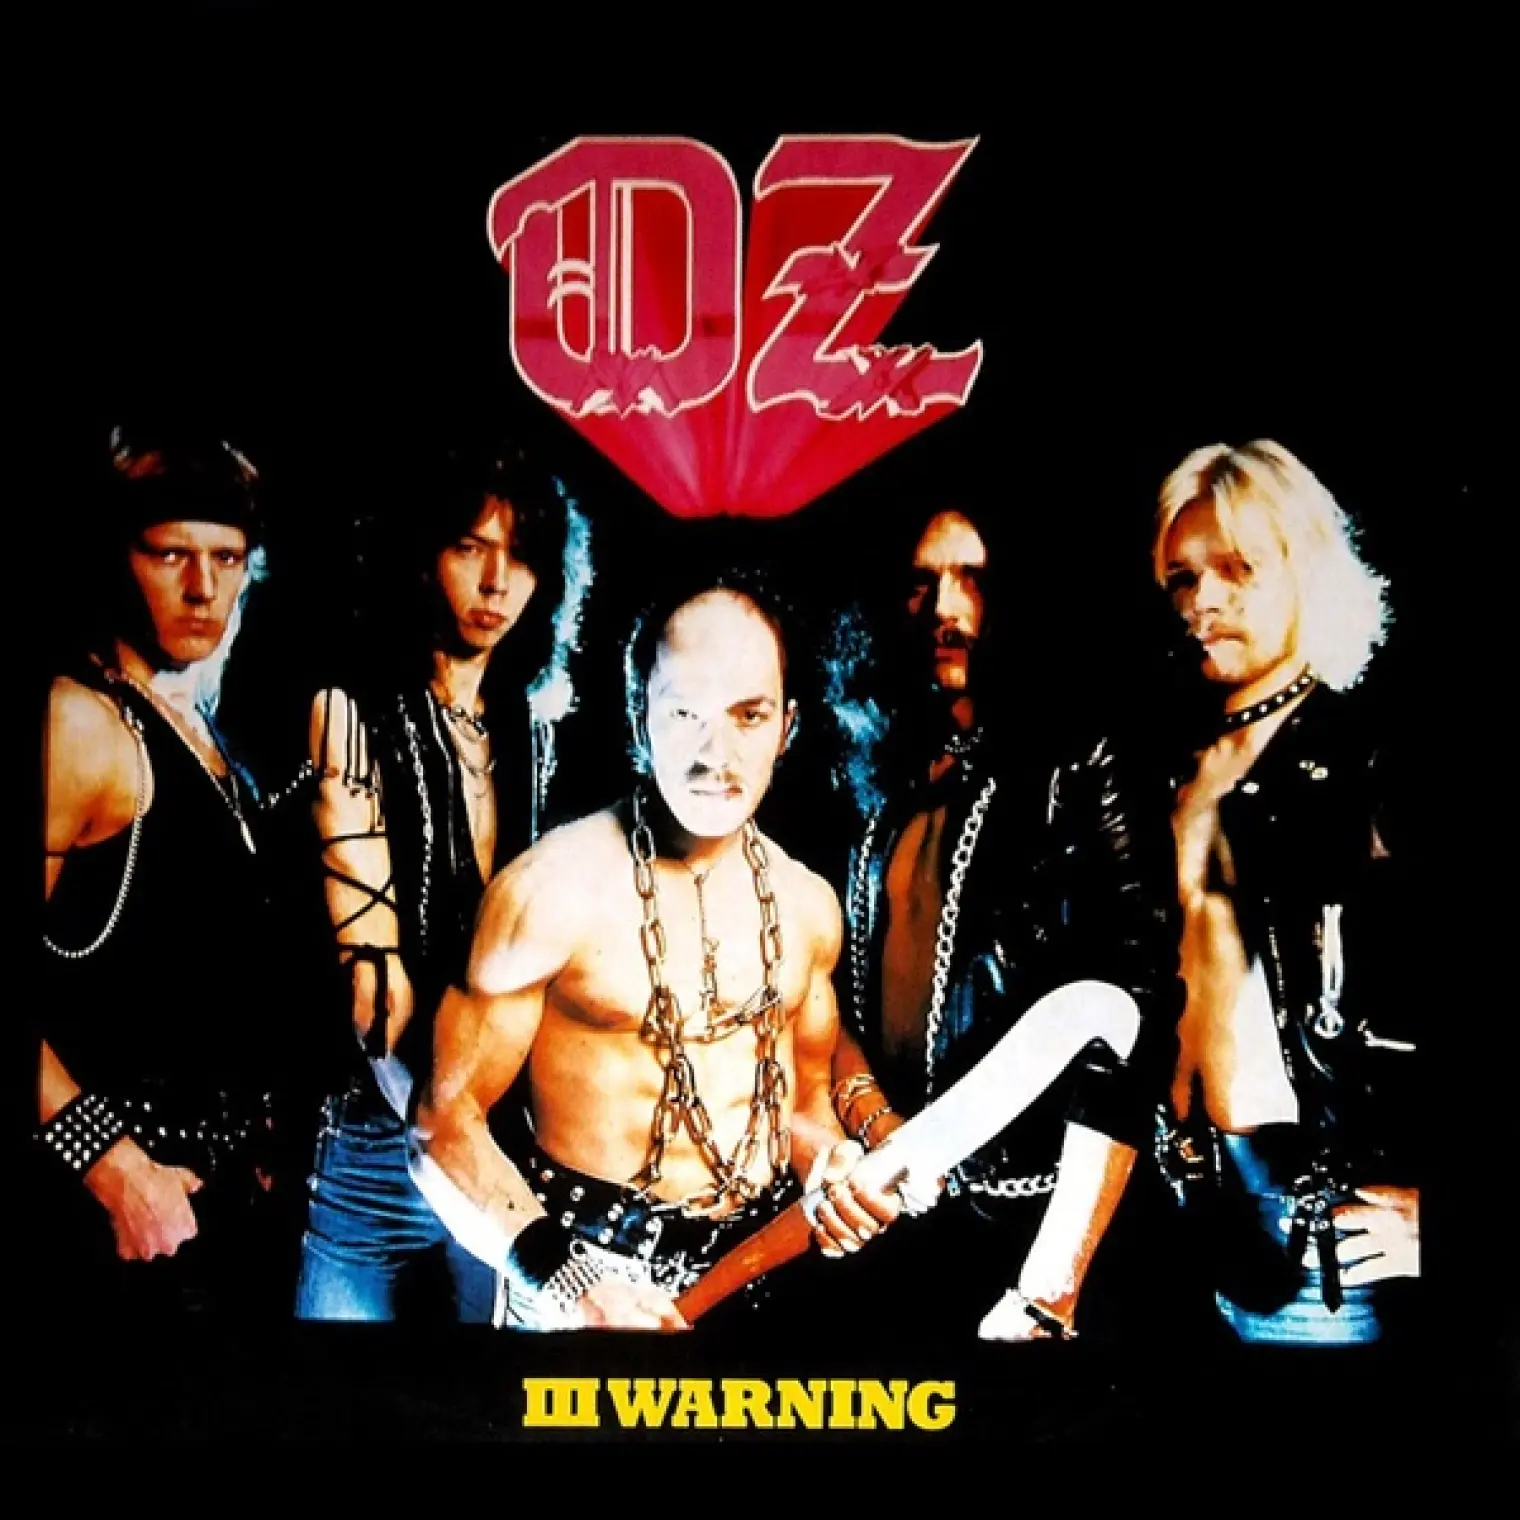 III Warning -  Oz 